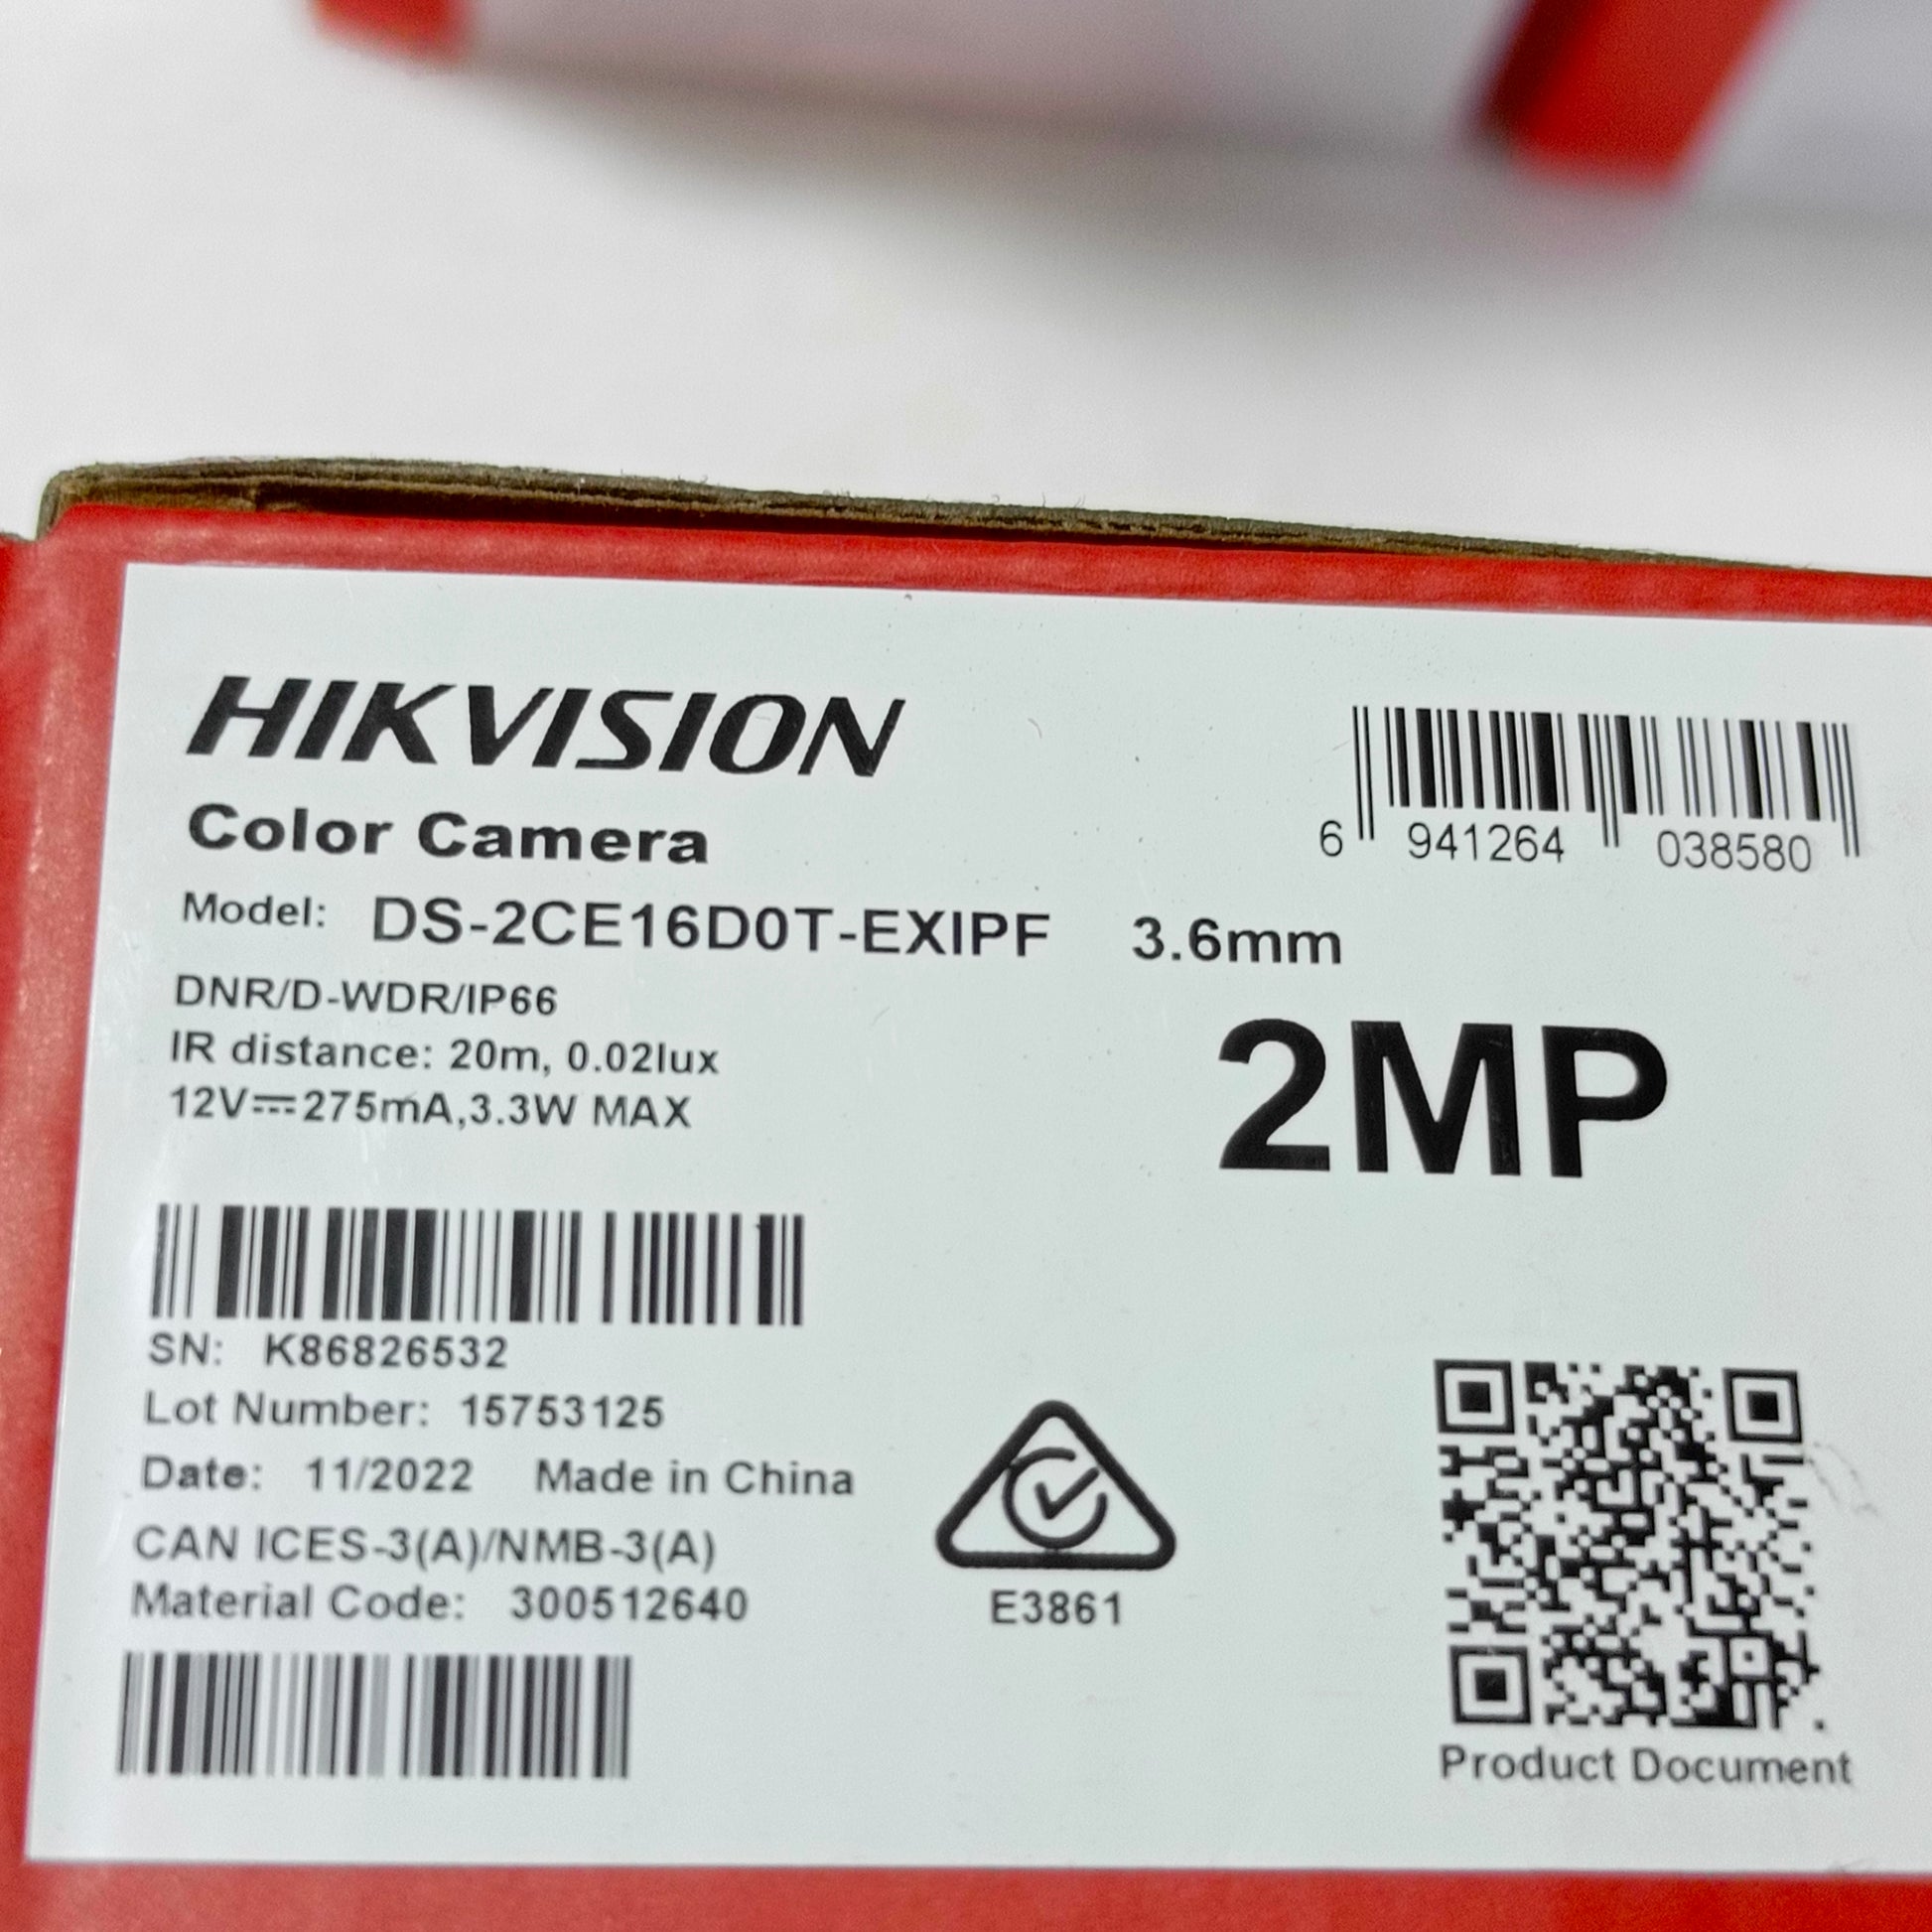 HIKVISION Turbo HD Indoor/Outdoor EXIR Bullet Camera (3.6mm 2MP Lens) - Carton model sticker